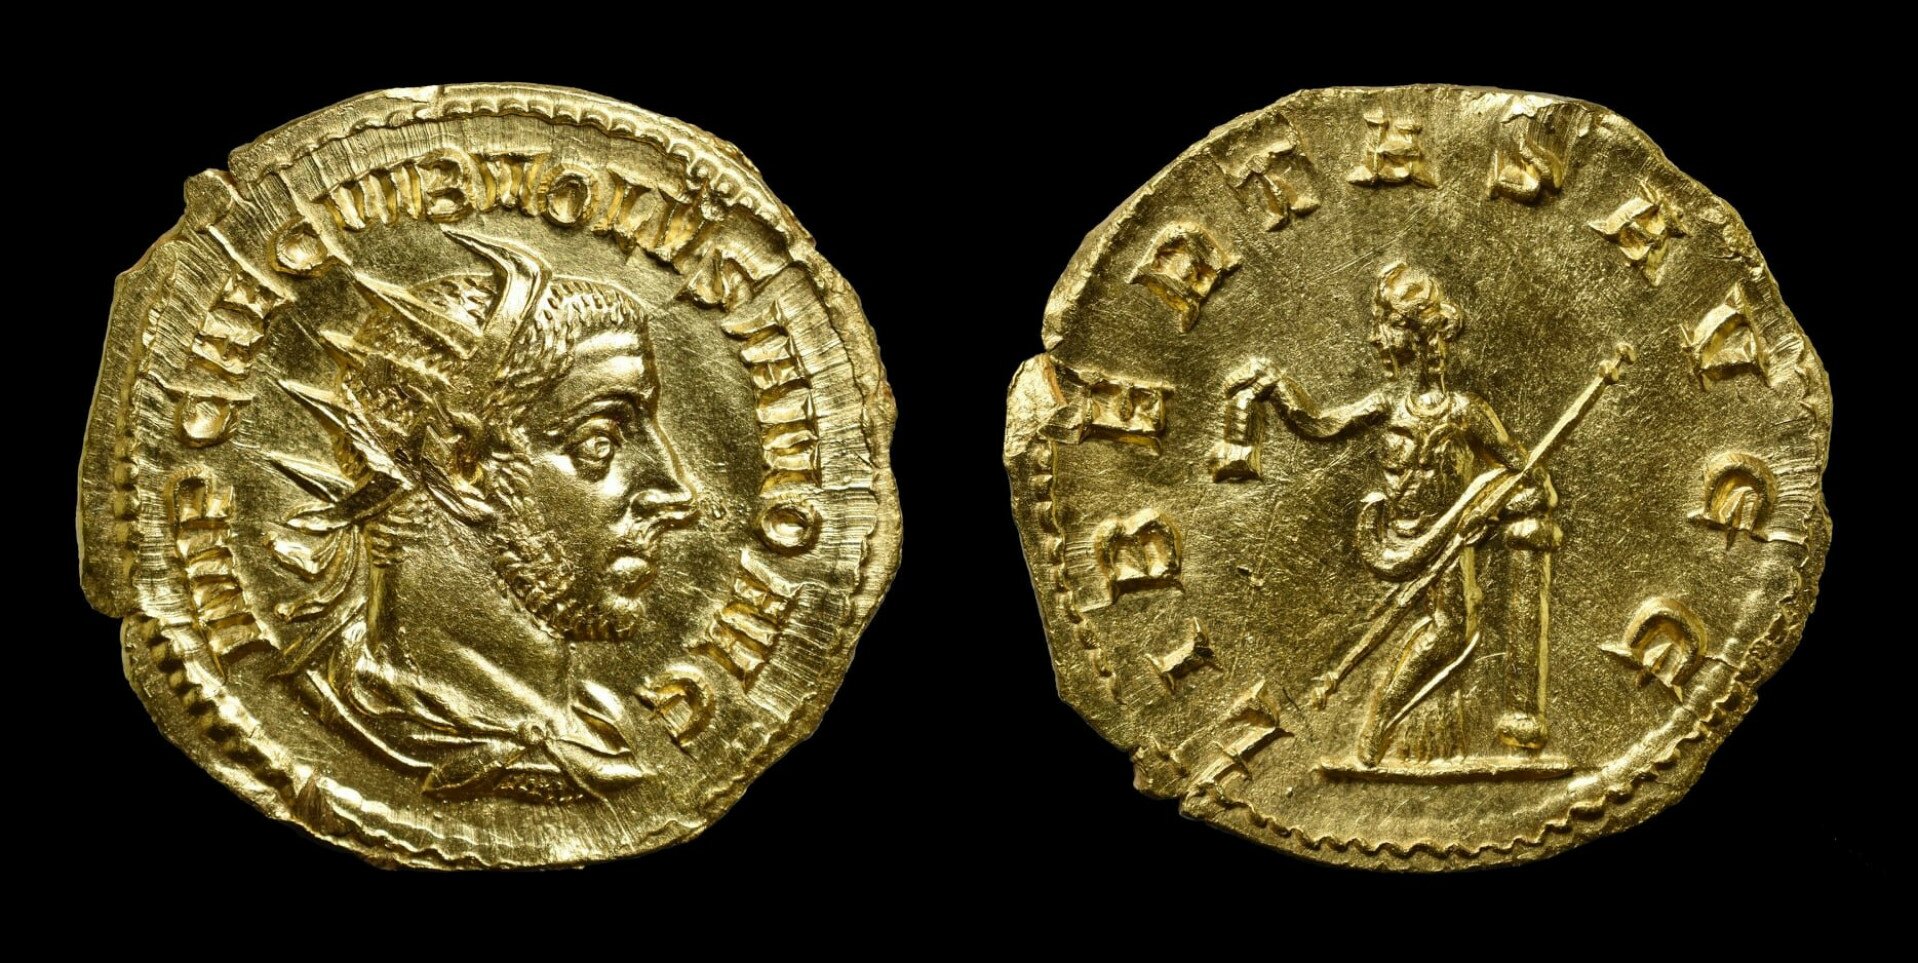 Ritka, római pénzérmére bukkantak Somogy megyében